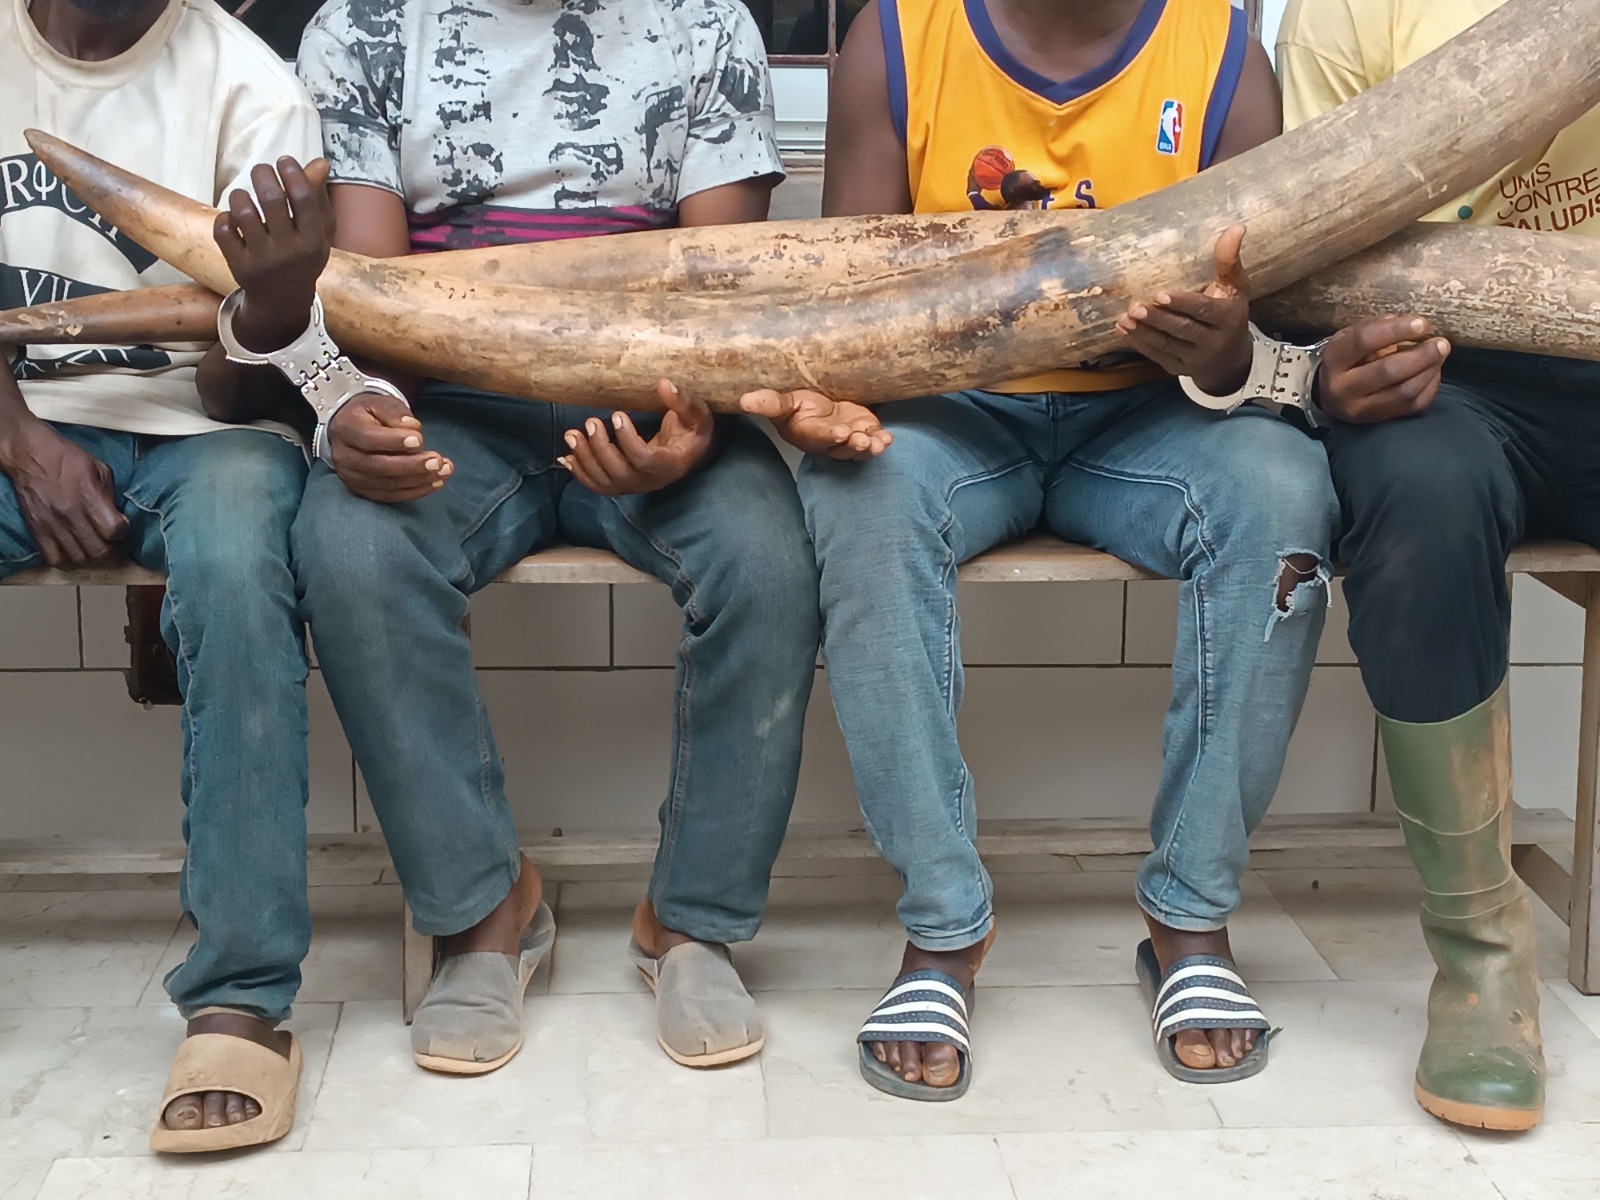 Trafic d’animaux : 4 présumés trafiquants dont un ex-militaire interpellés à Gabiadji avec 2 défenses d’ivoires d’éléphants